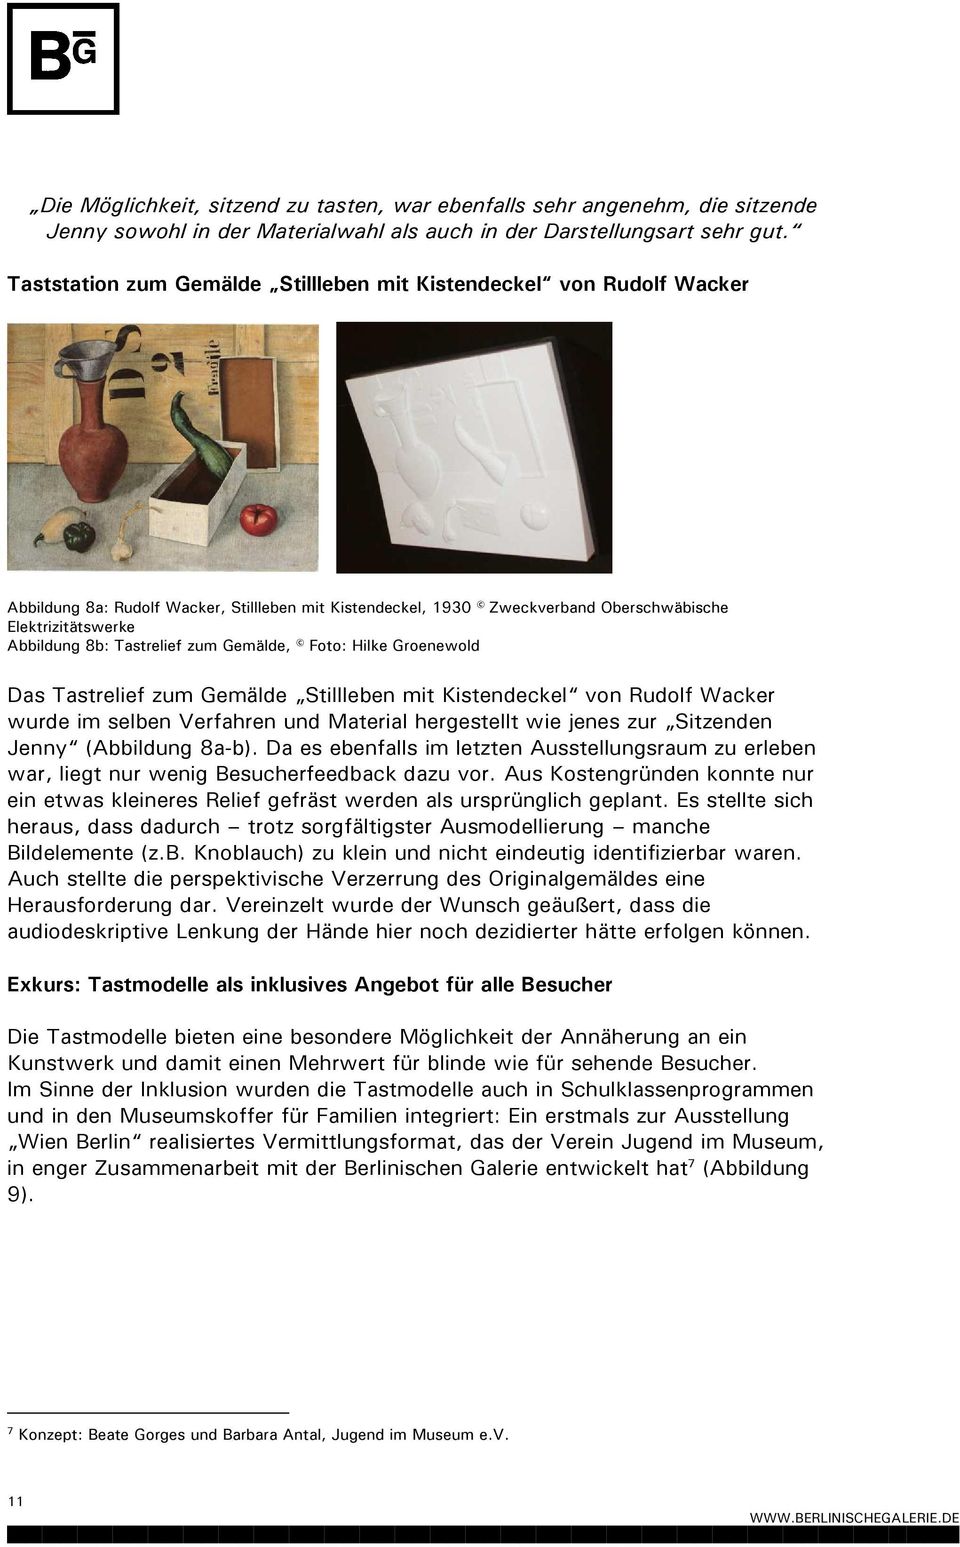 Tastrelief zum Gemälde, Foto: Hilke Groenewold Das Tastrelief zum Gemälde Stillleben mit Kistendeckel von Rudolf Wacker wurde im selben Verfahren und Material hergestellt wie jenes zur Sitzenden